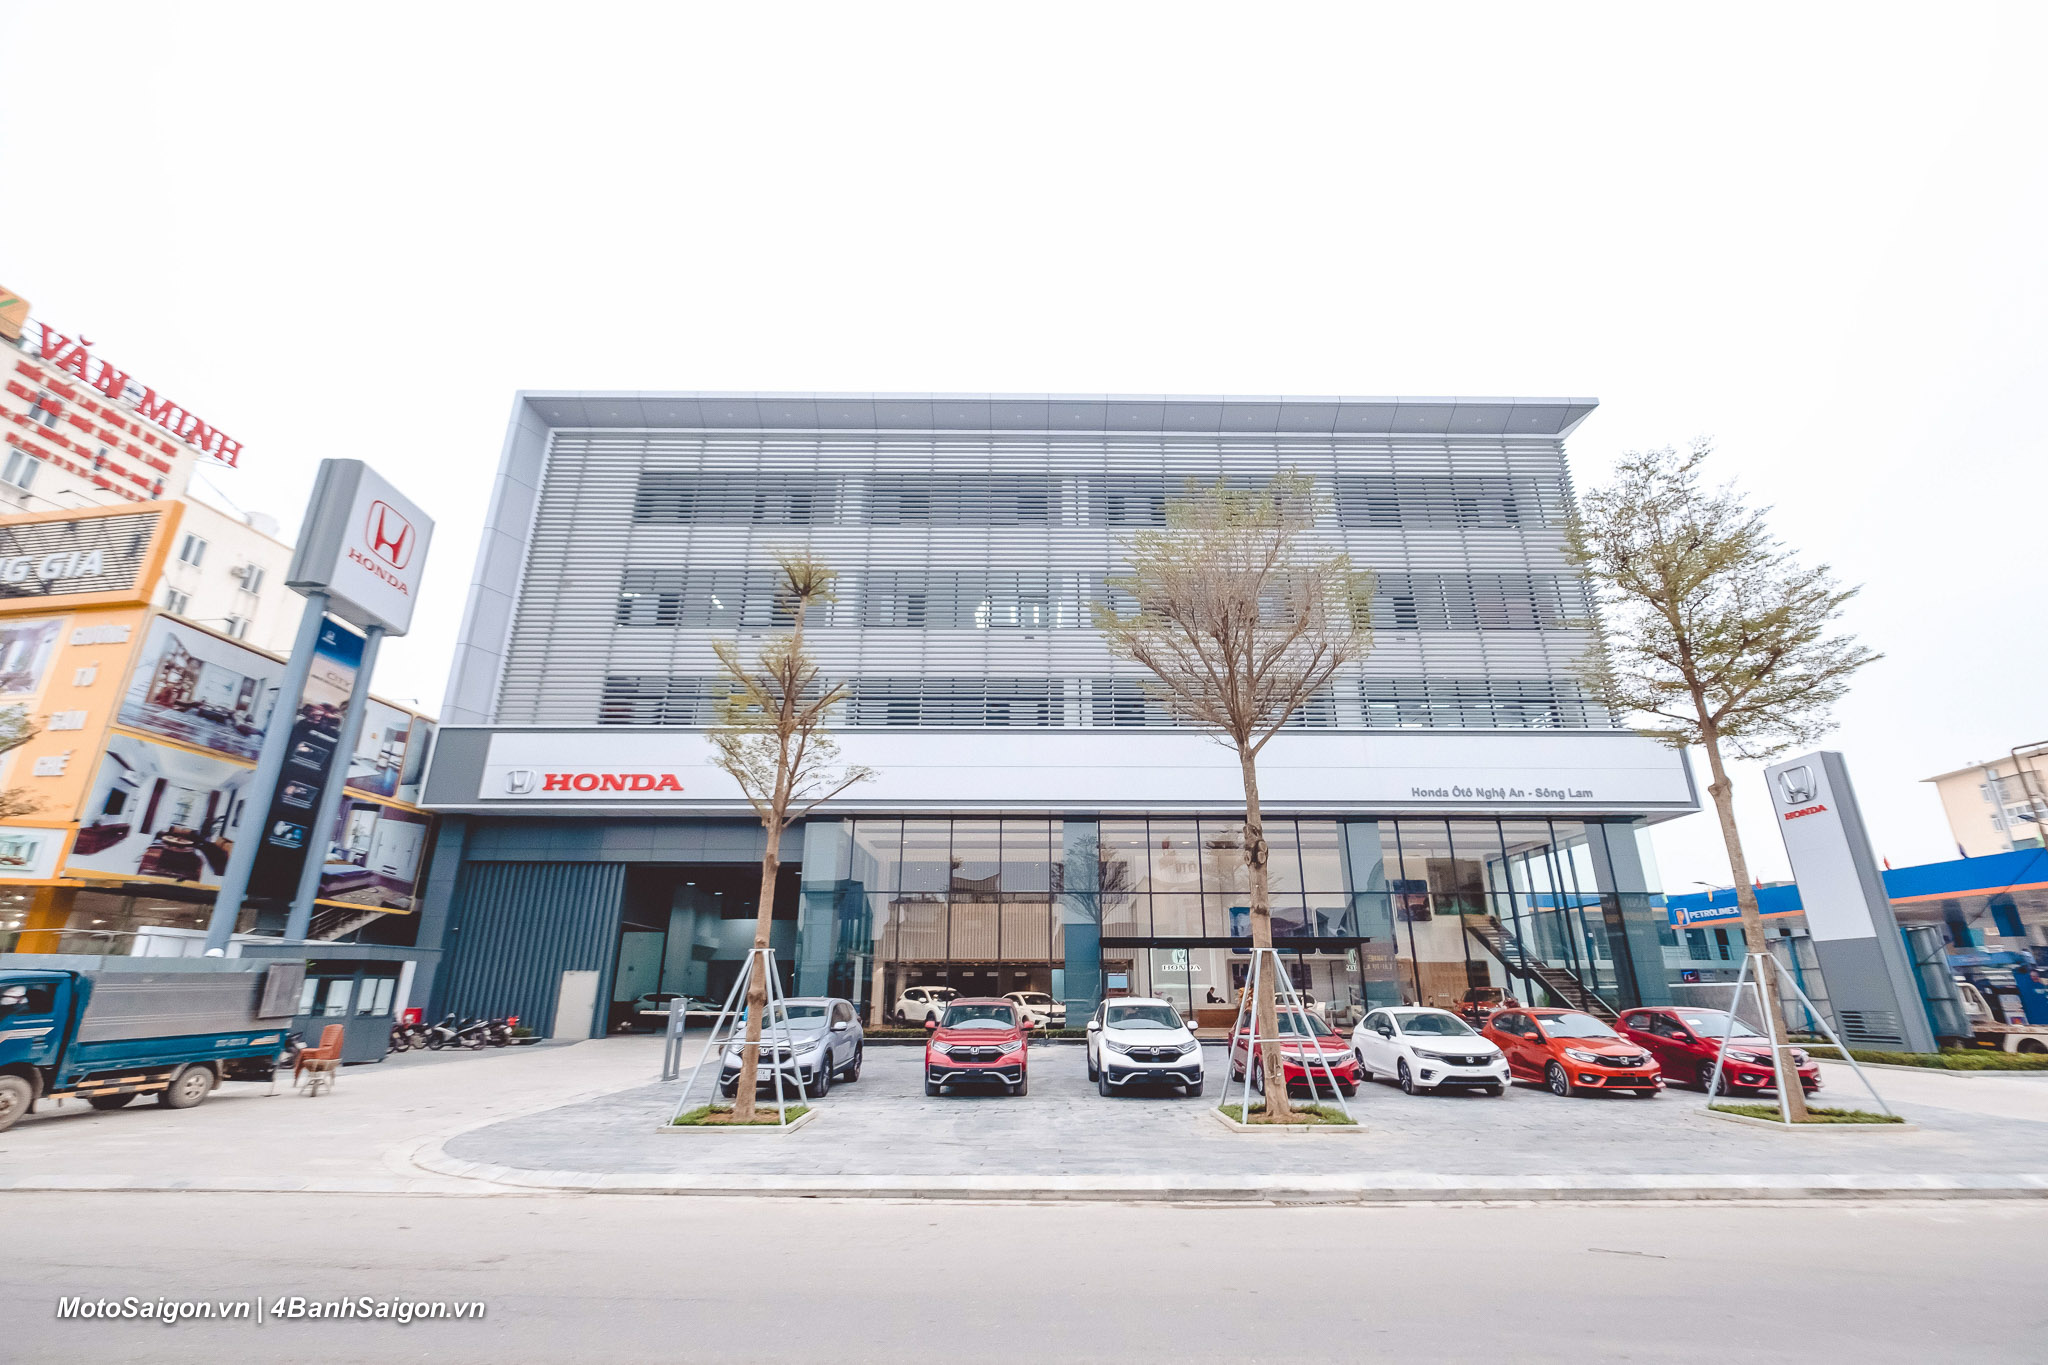 Honda Việt Nam giới thiệu Tiêu chuẩn Đại lý mới và thông báo khai trương hai Đại lý Honda Ôtô Đà Nẵng – Cẩm Lệ và Honda Ôtô Nghệ An – Sông Lam